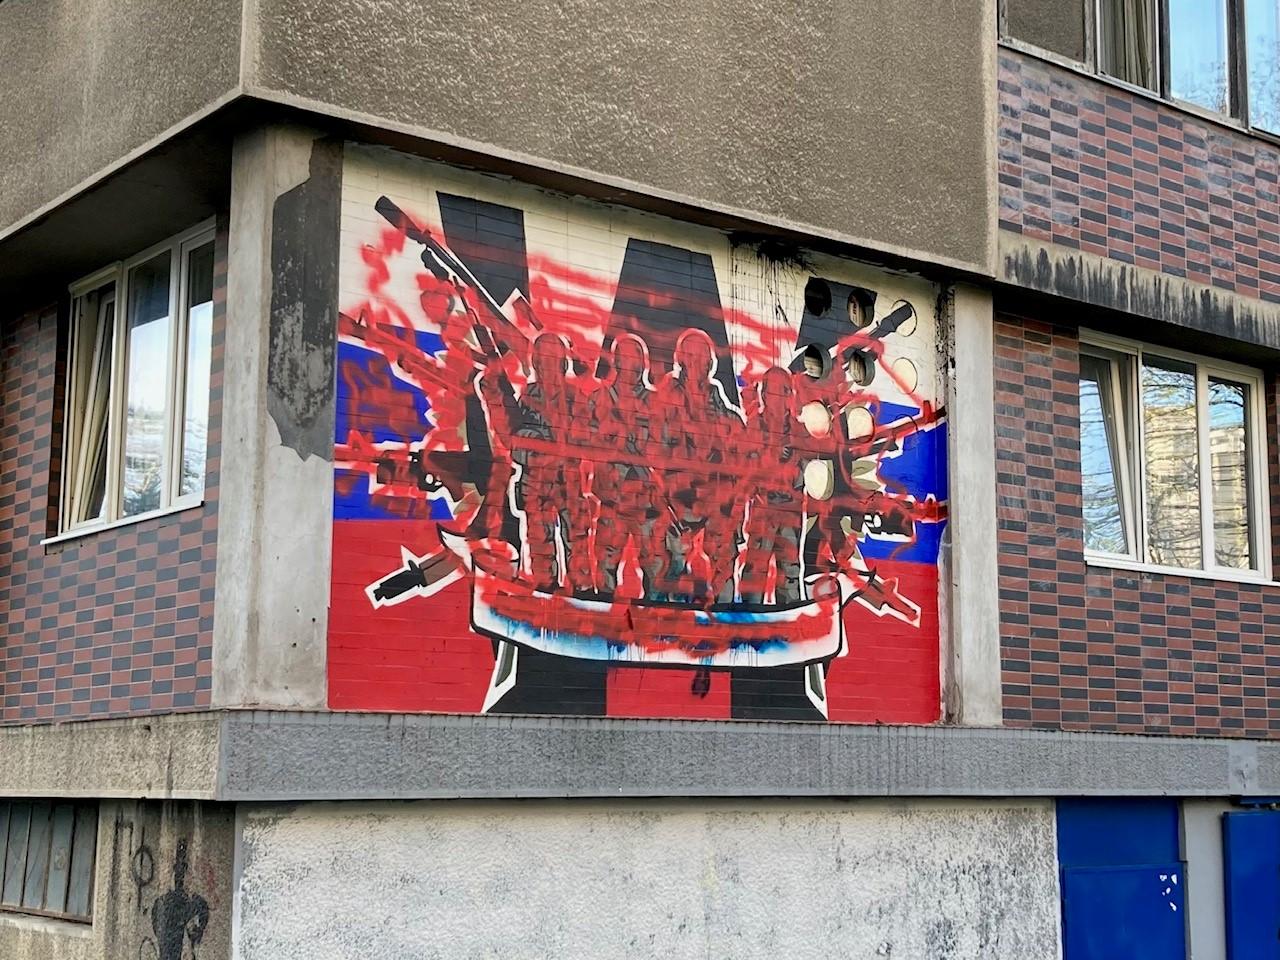 Les peintures murales pro Poutine se multiplient à Belgrade. [RTS - Laurent Burkhalter]